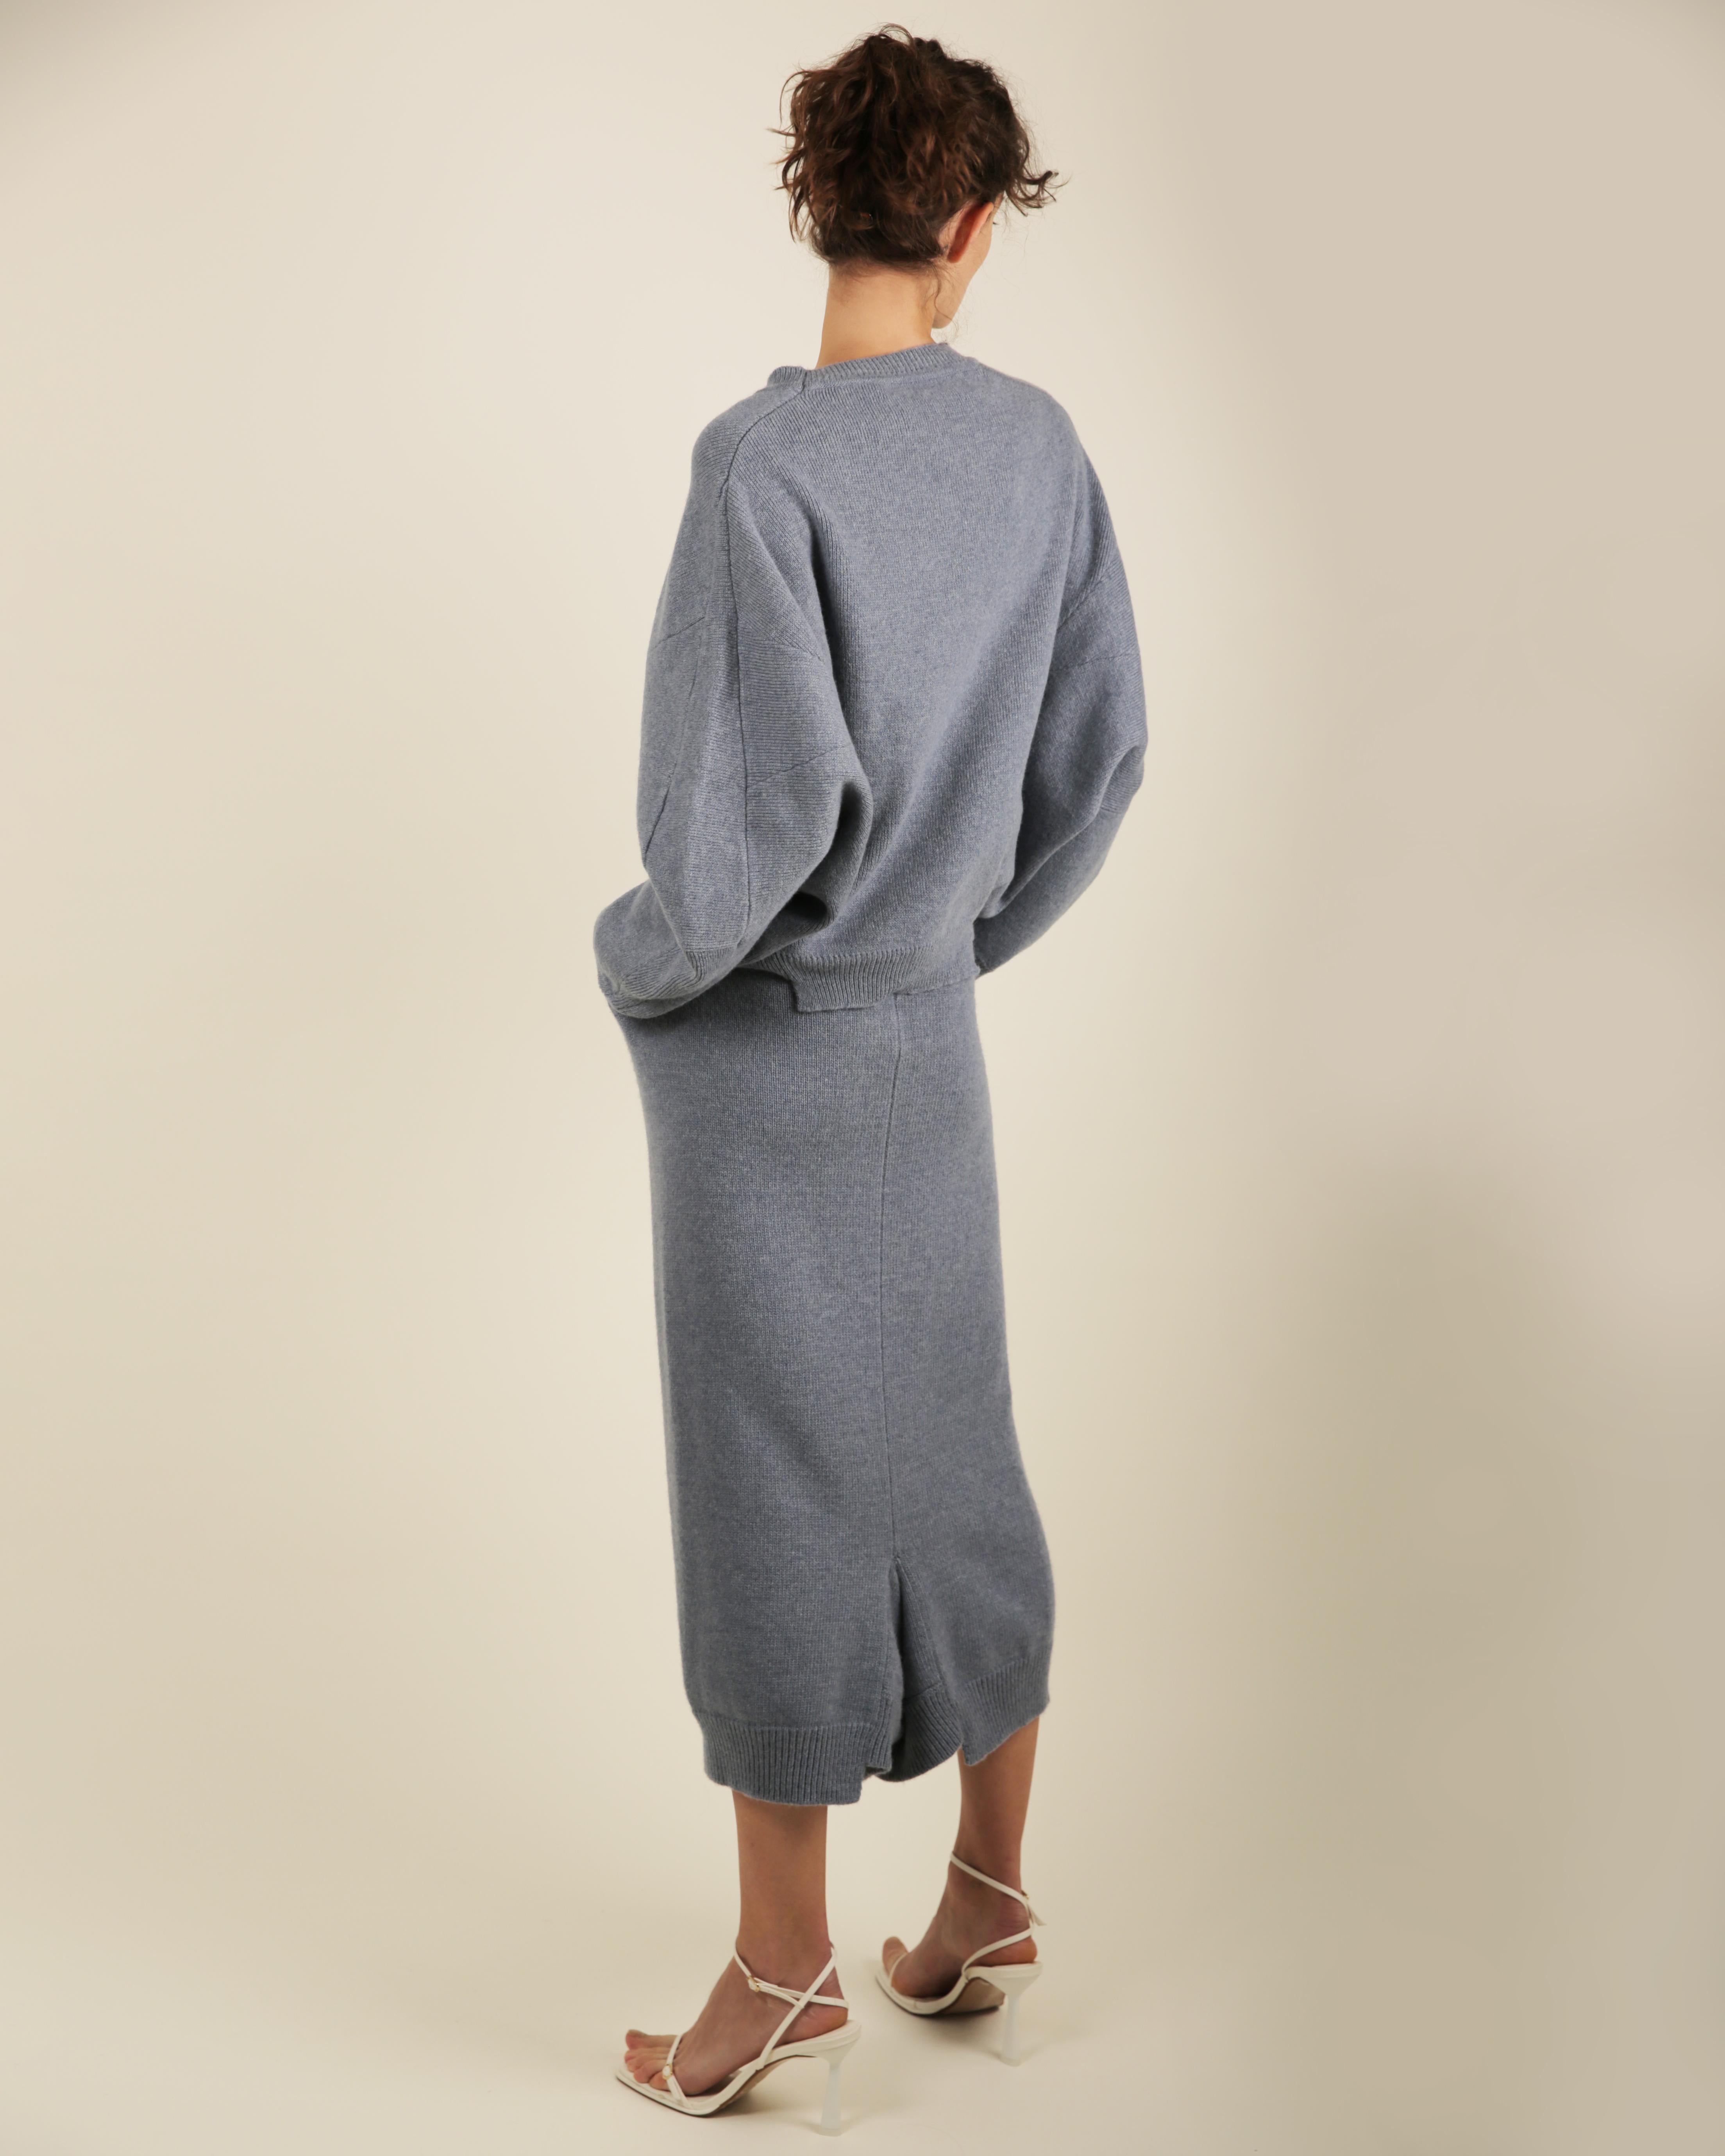 Stella McCartney Fall18 blue oversized wool alpaca matching sweater dress pants For Sale 10